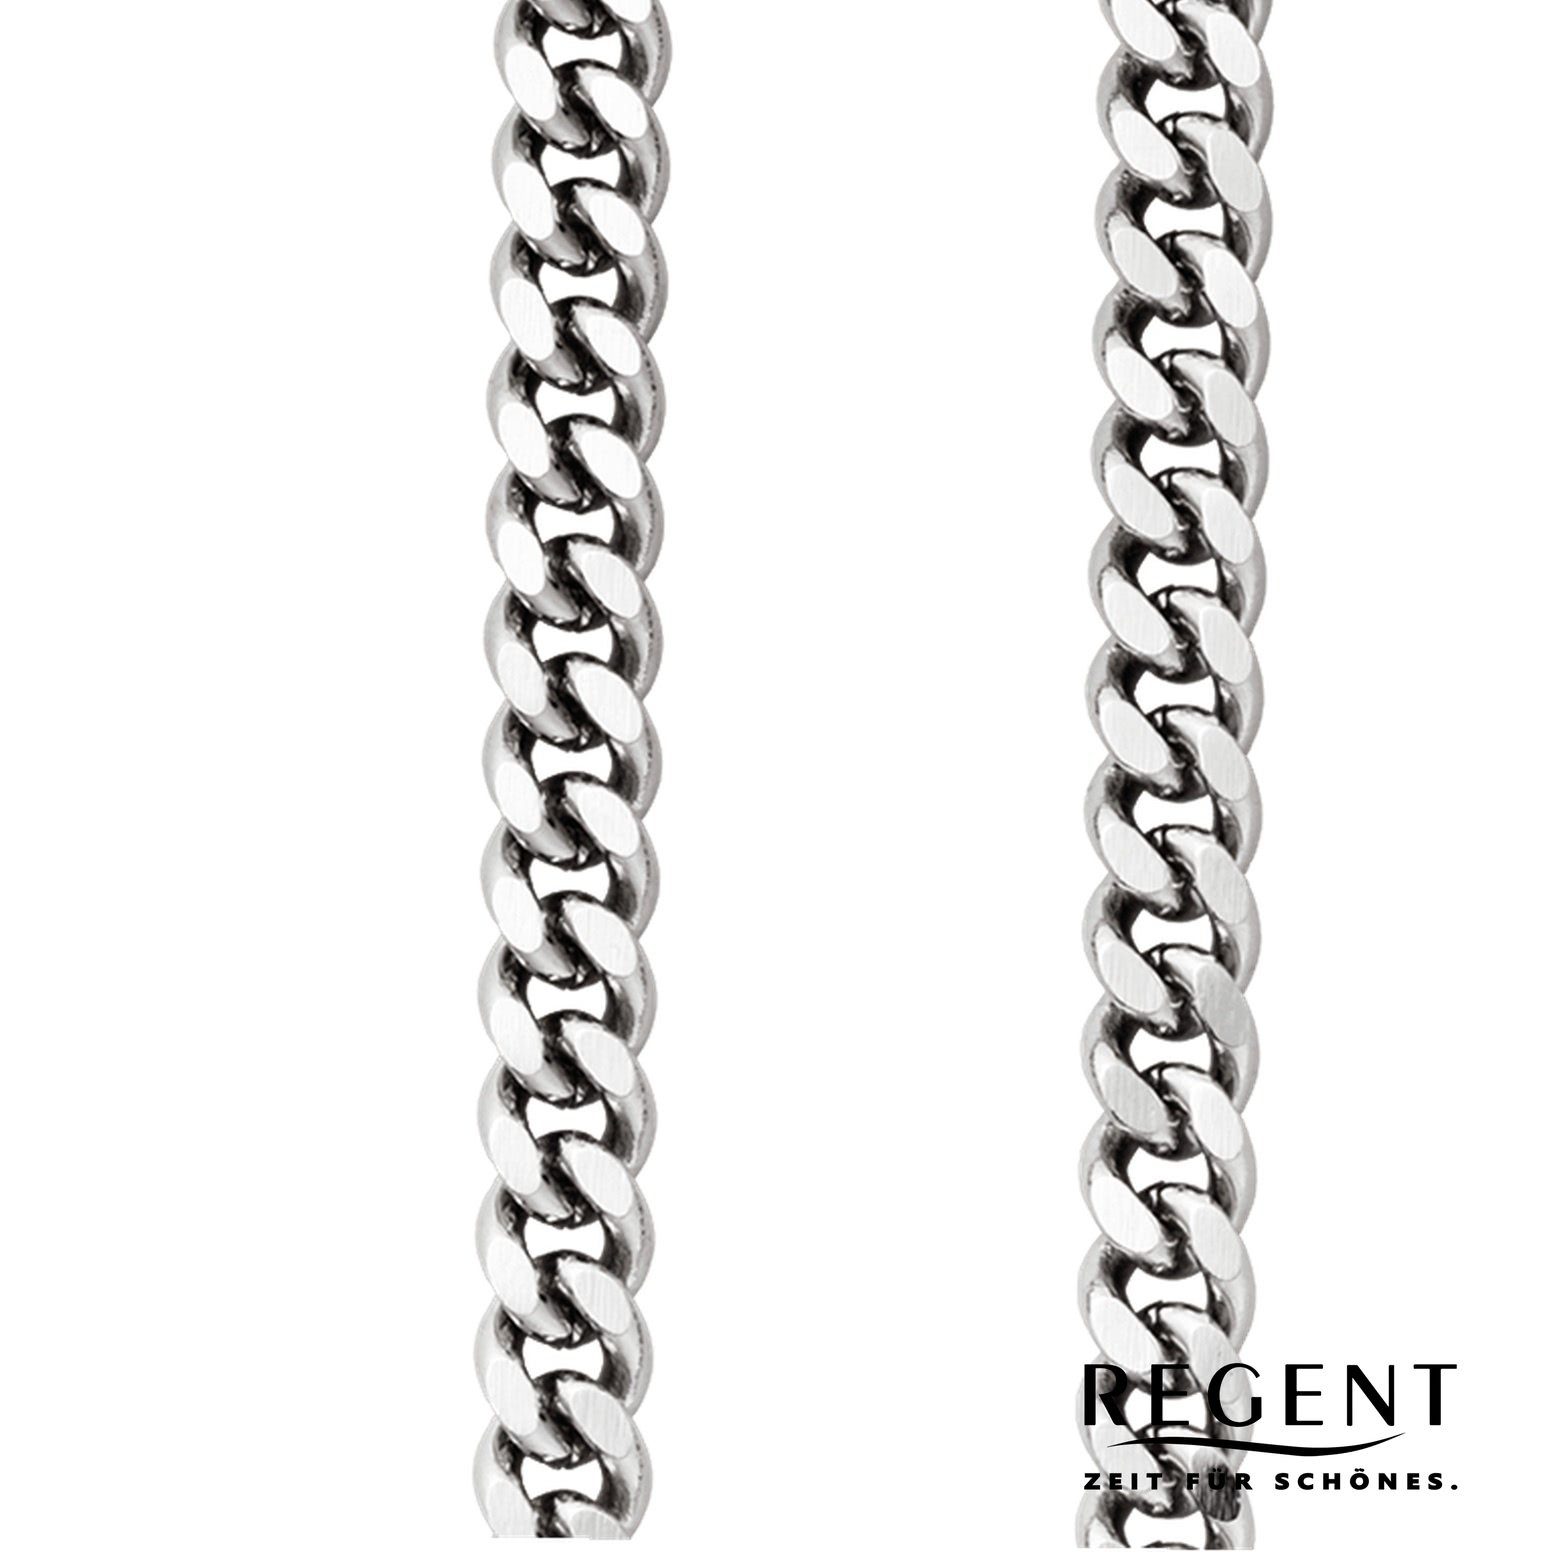 6mm Regent Herren P-43, Regent Kettenuhr Elegant Taschenuhrenkette, Taschenuhren-Kette